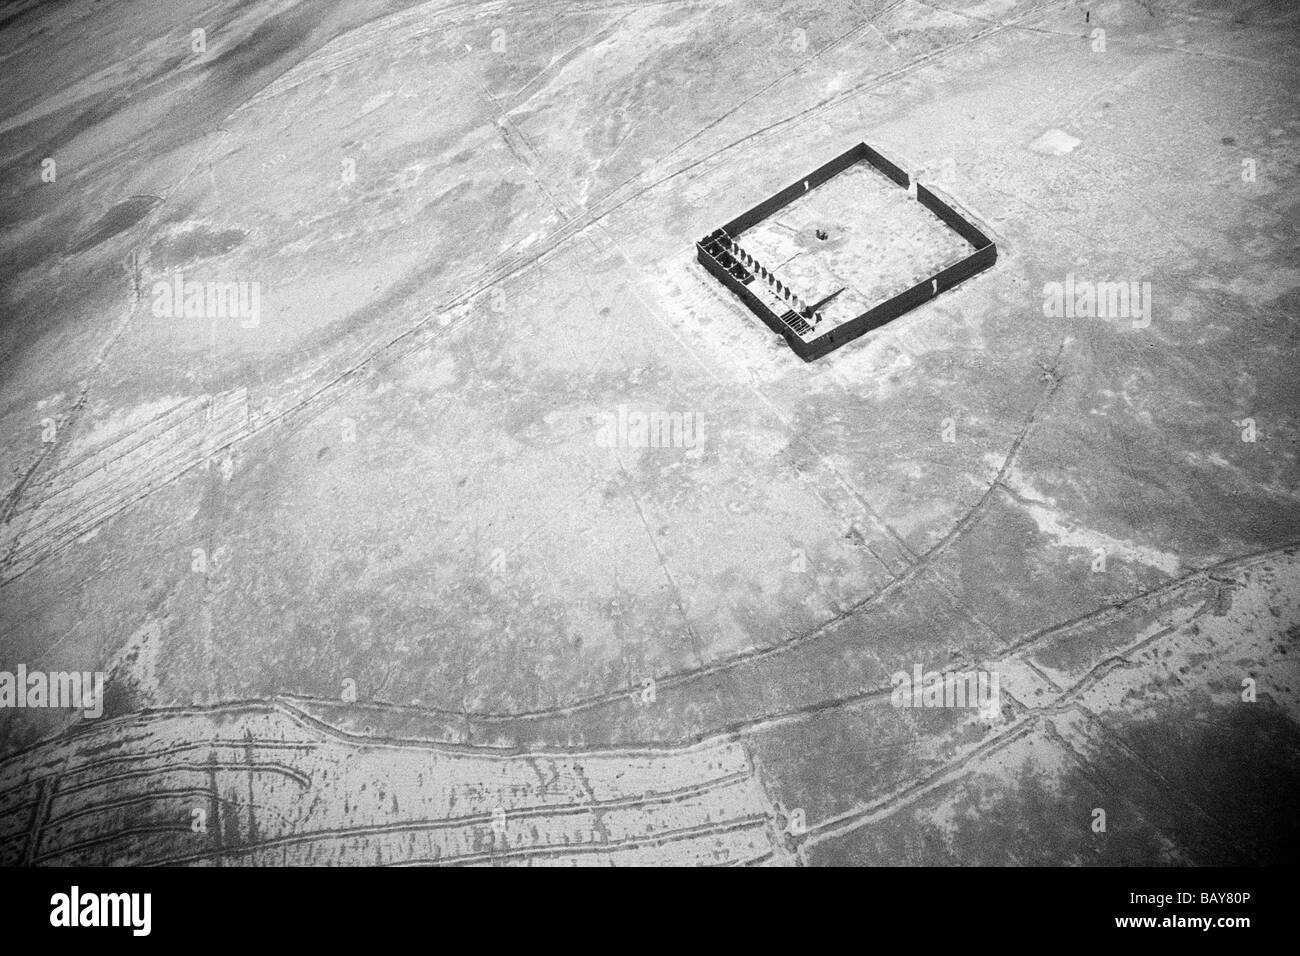 Vu de l'air Composé au-dessus de la zone de Marjeh qui produisent de l'opium de l'Afghanistan, la province de Helmand, mars 2007. Banque D'Images